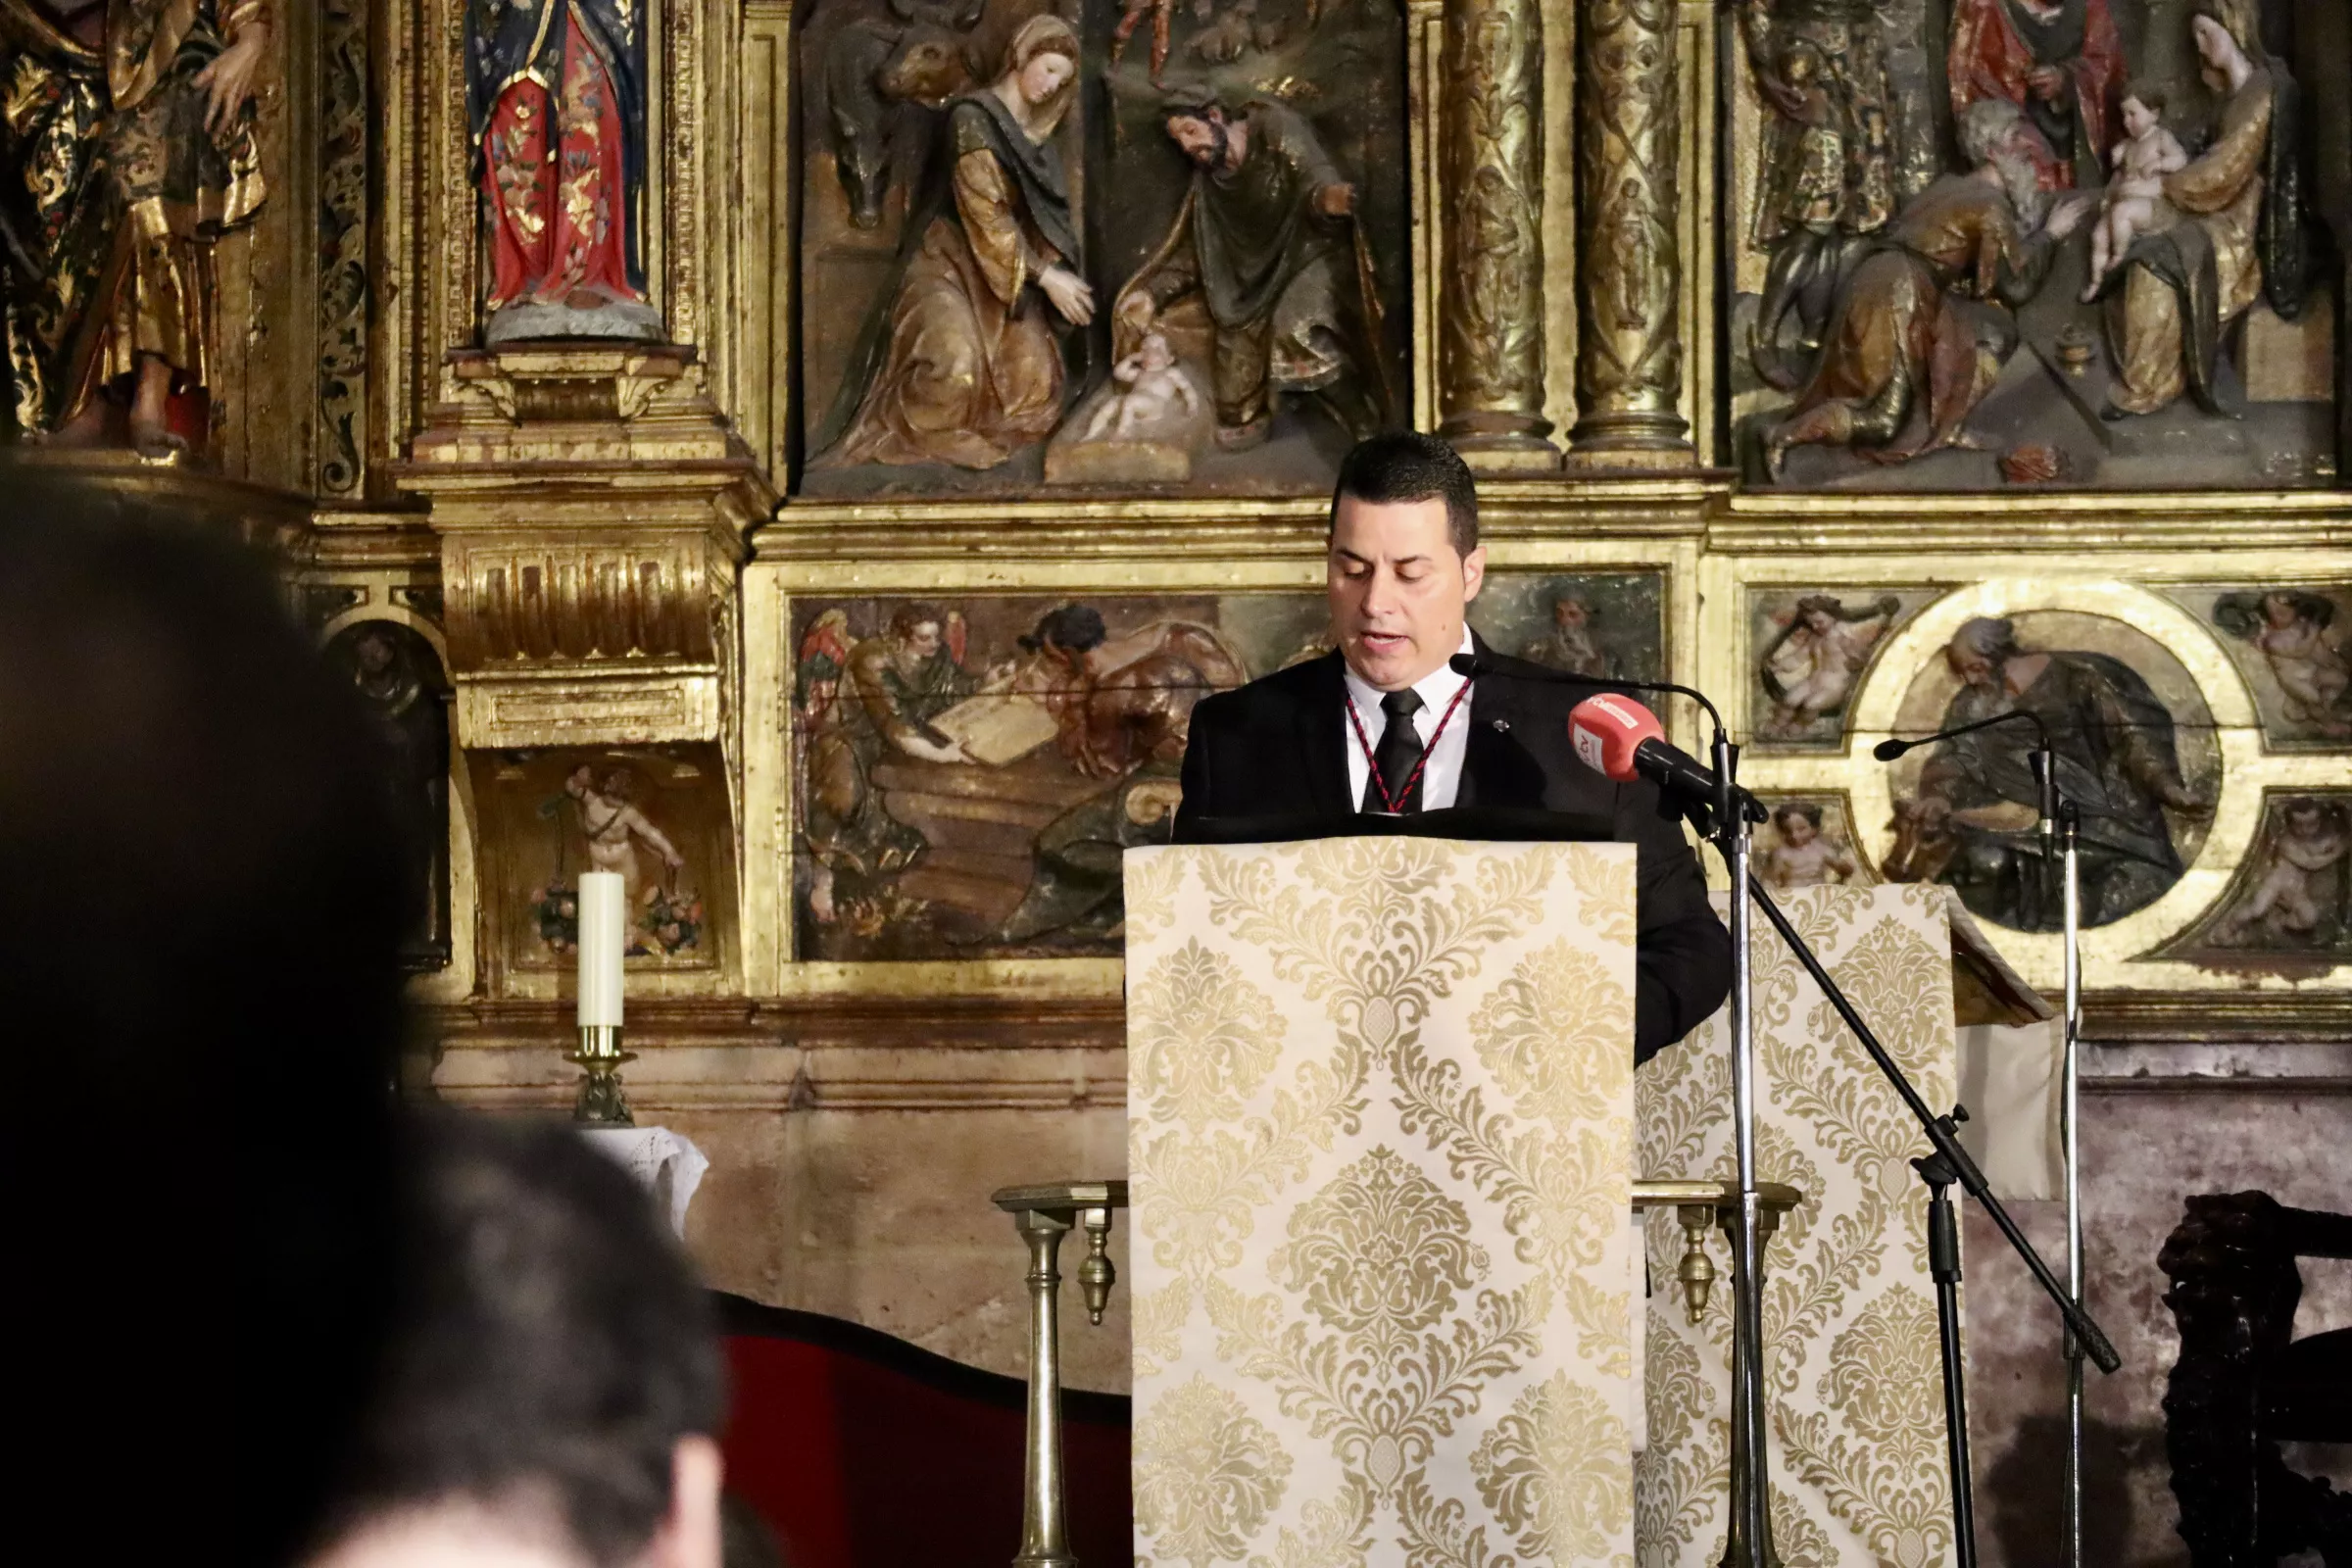 Presentación de los actos del 300 Aniversario de la Congregación Servita de Lucena